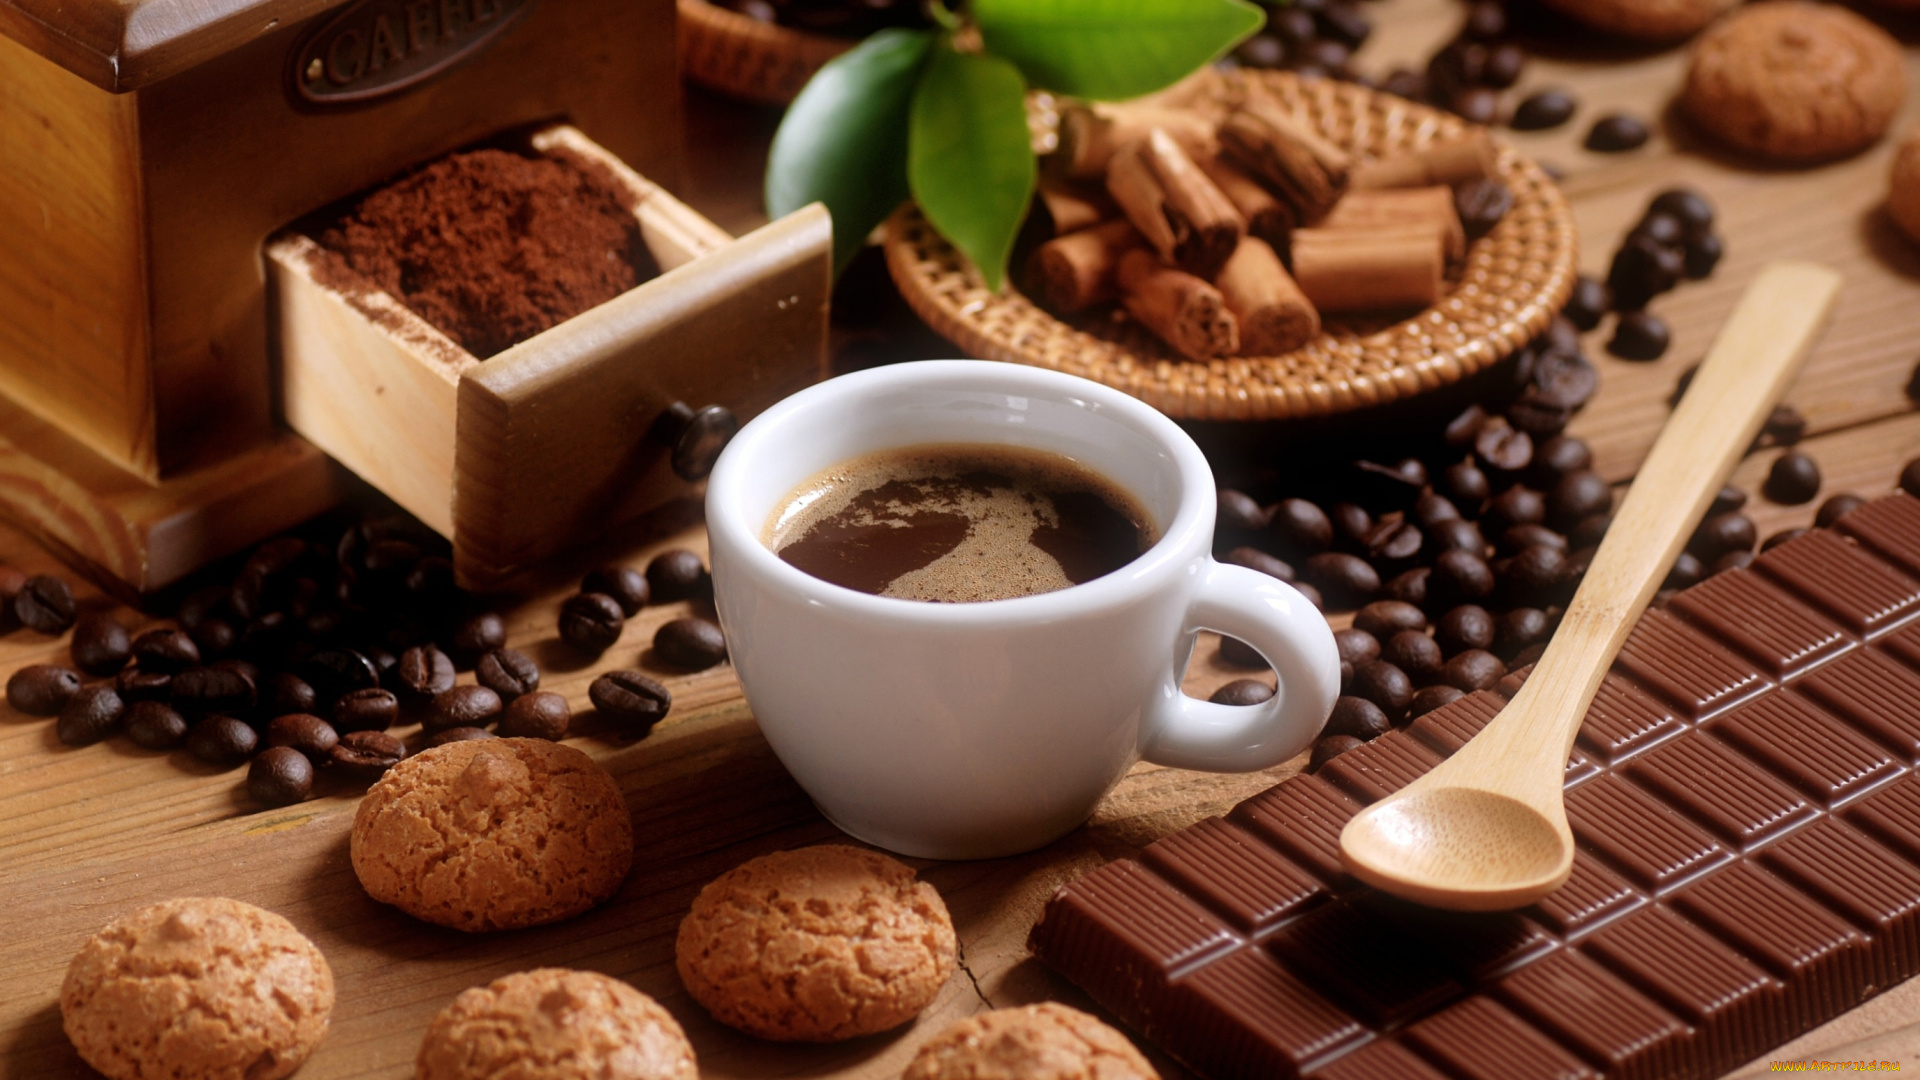 еда, кофе, , кофейные, зёрна, печенье, шоколад, молочный, плитка, зерна, чашка, ложка, листья, корица, десерт